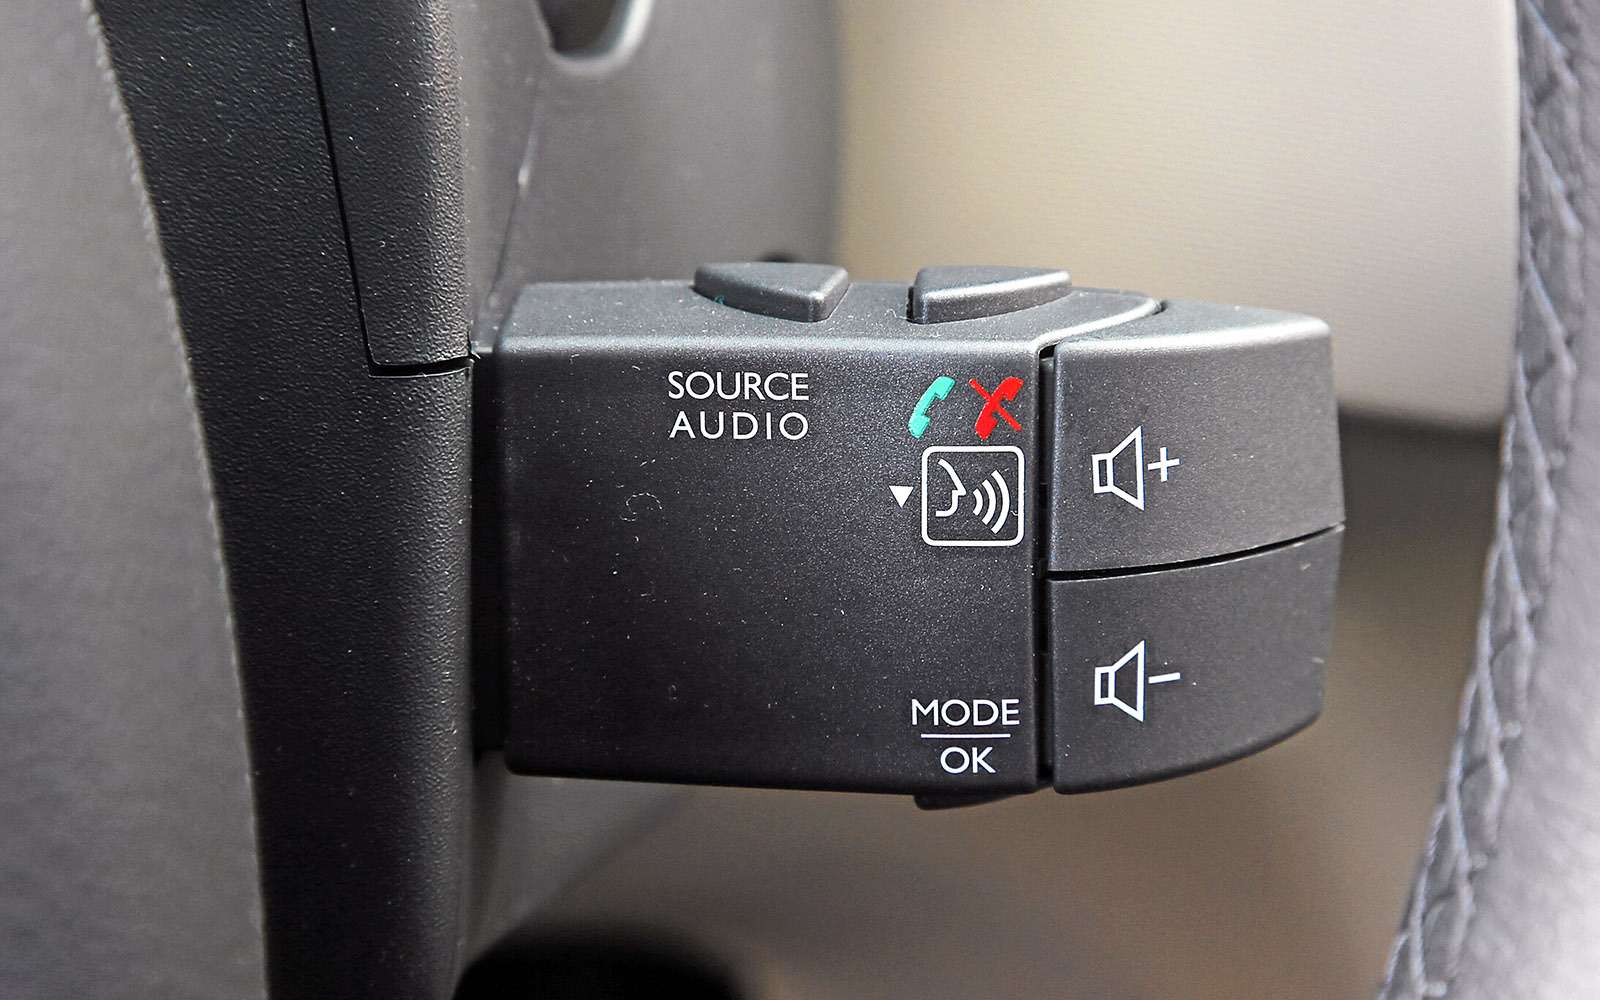 Многие считают подрулевой пульт управления аудиосистемой удобным. Но французы на своих свежих моделях отказались от него в пользу кнопок на руле. И это правильно.